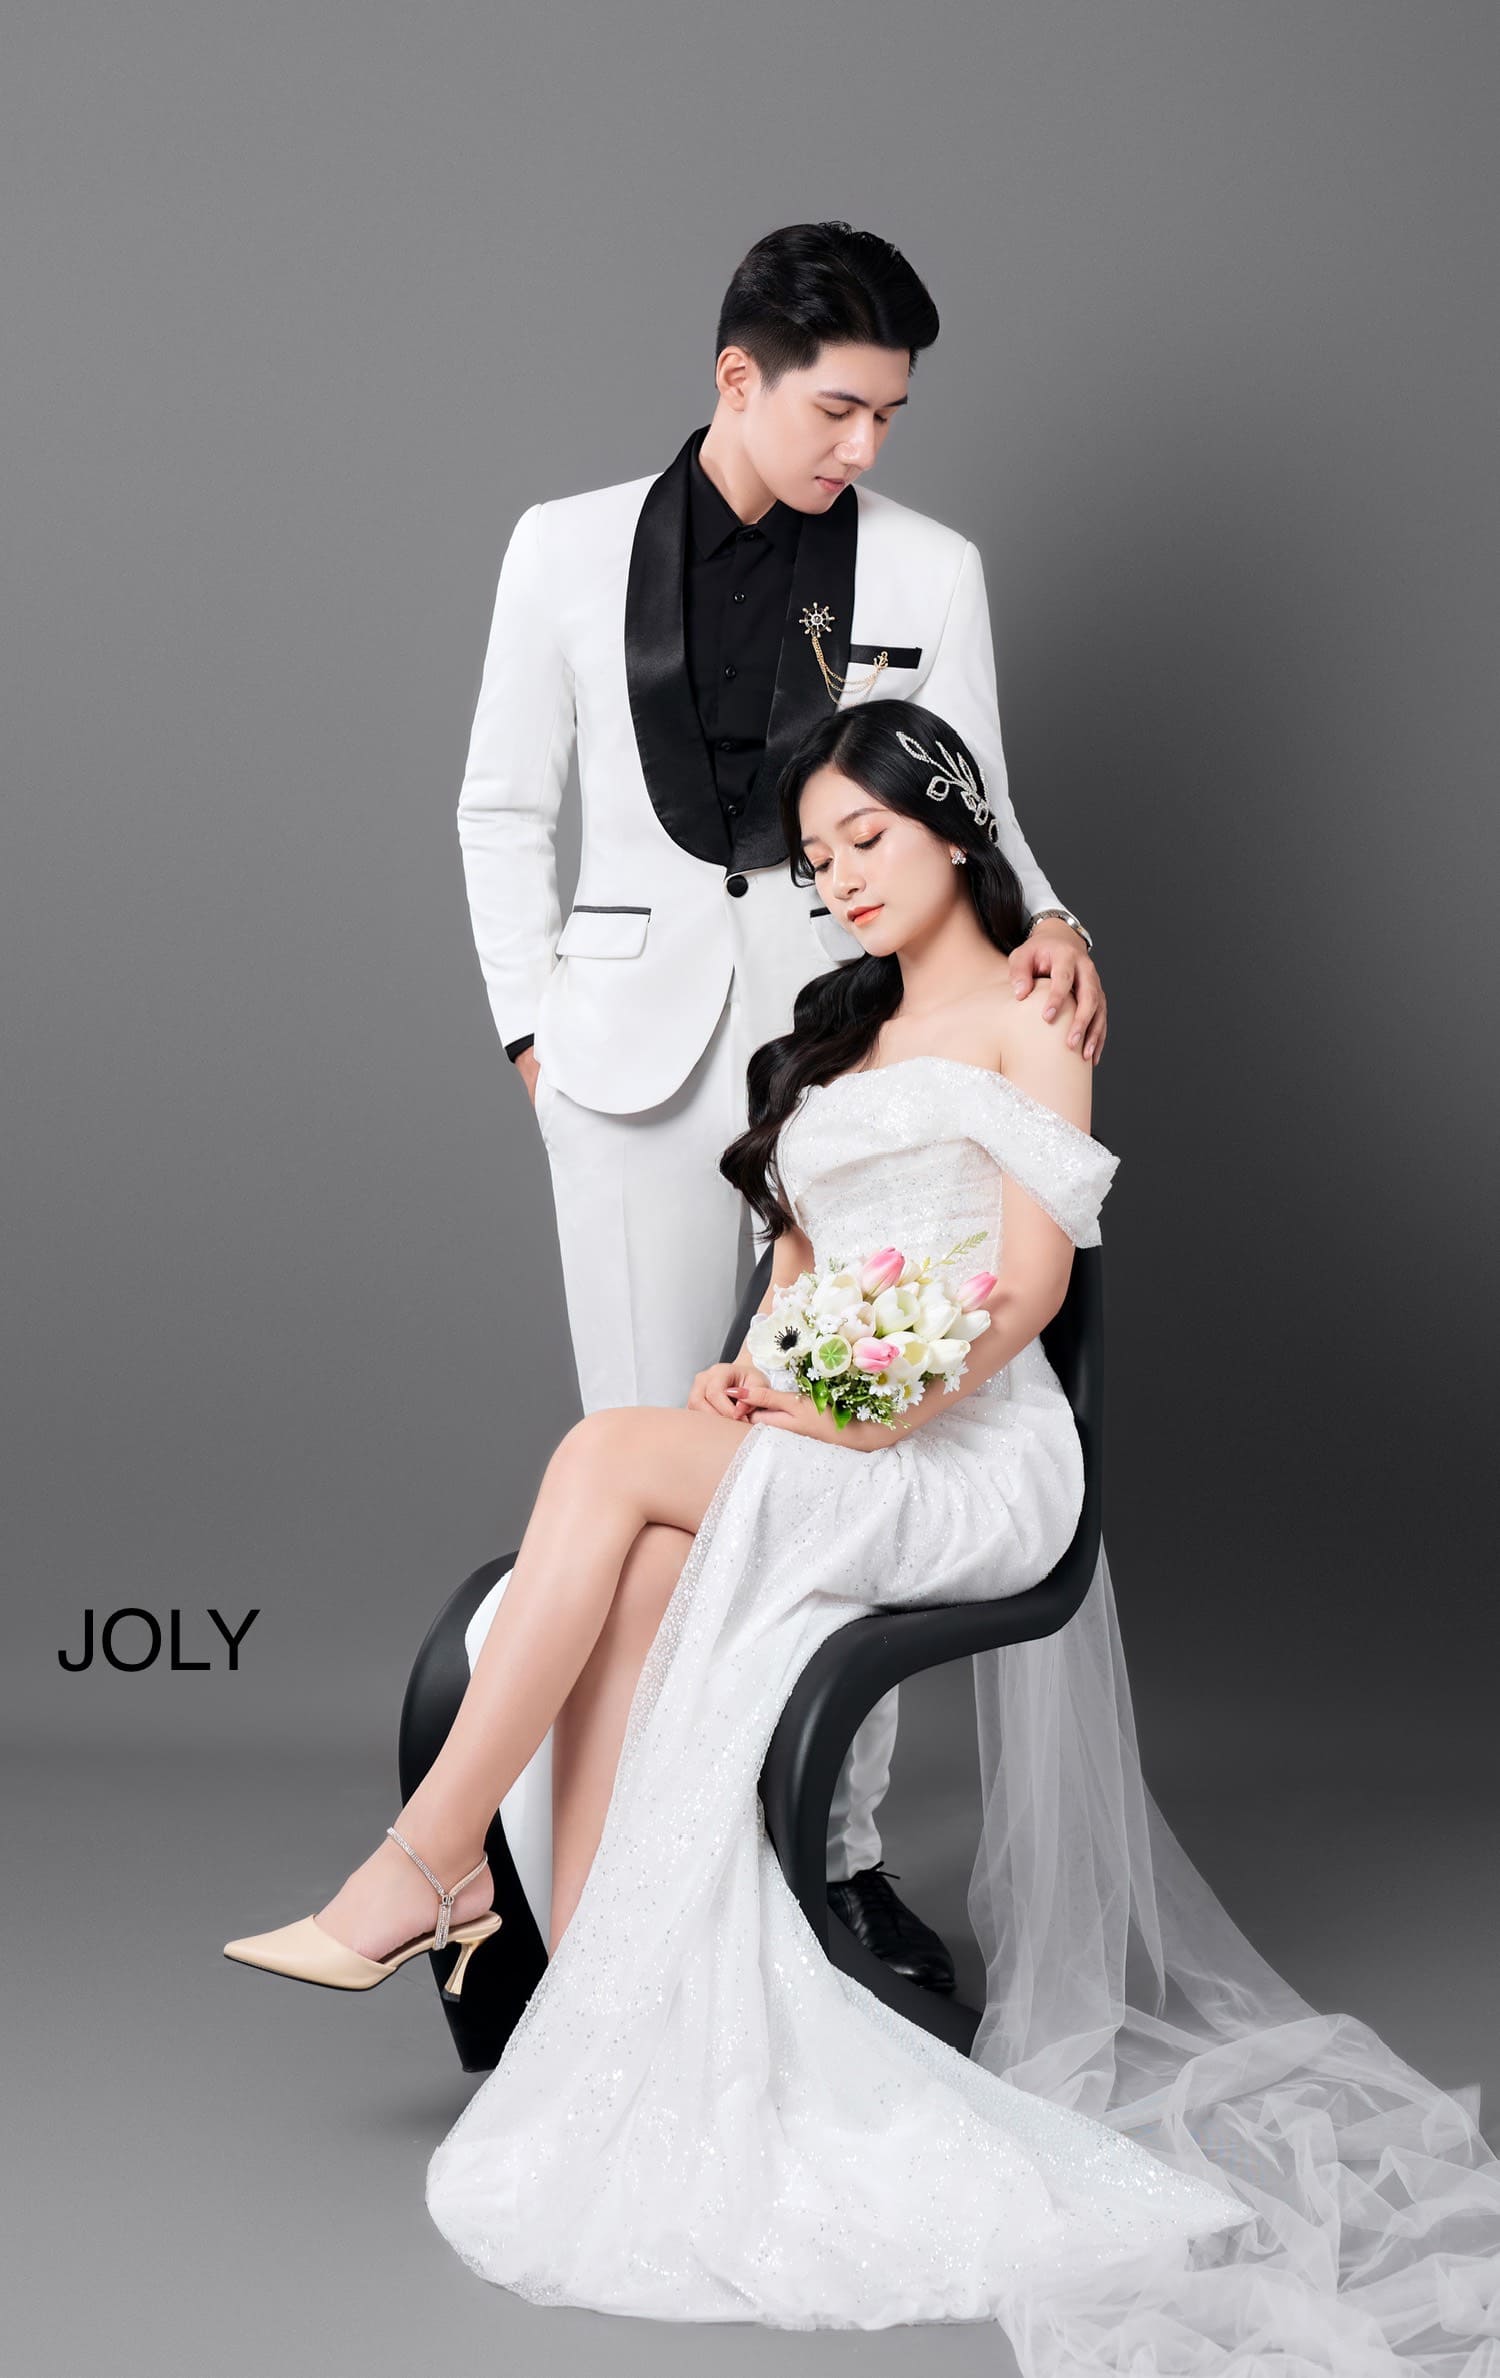 JOLY Wedding - Studio Chụp Ảnh Cưới Chuyên Nghiệp, Chất Lượng Tại Huế